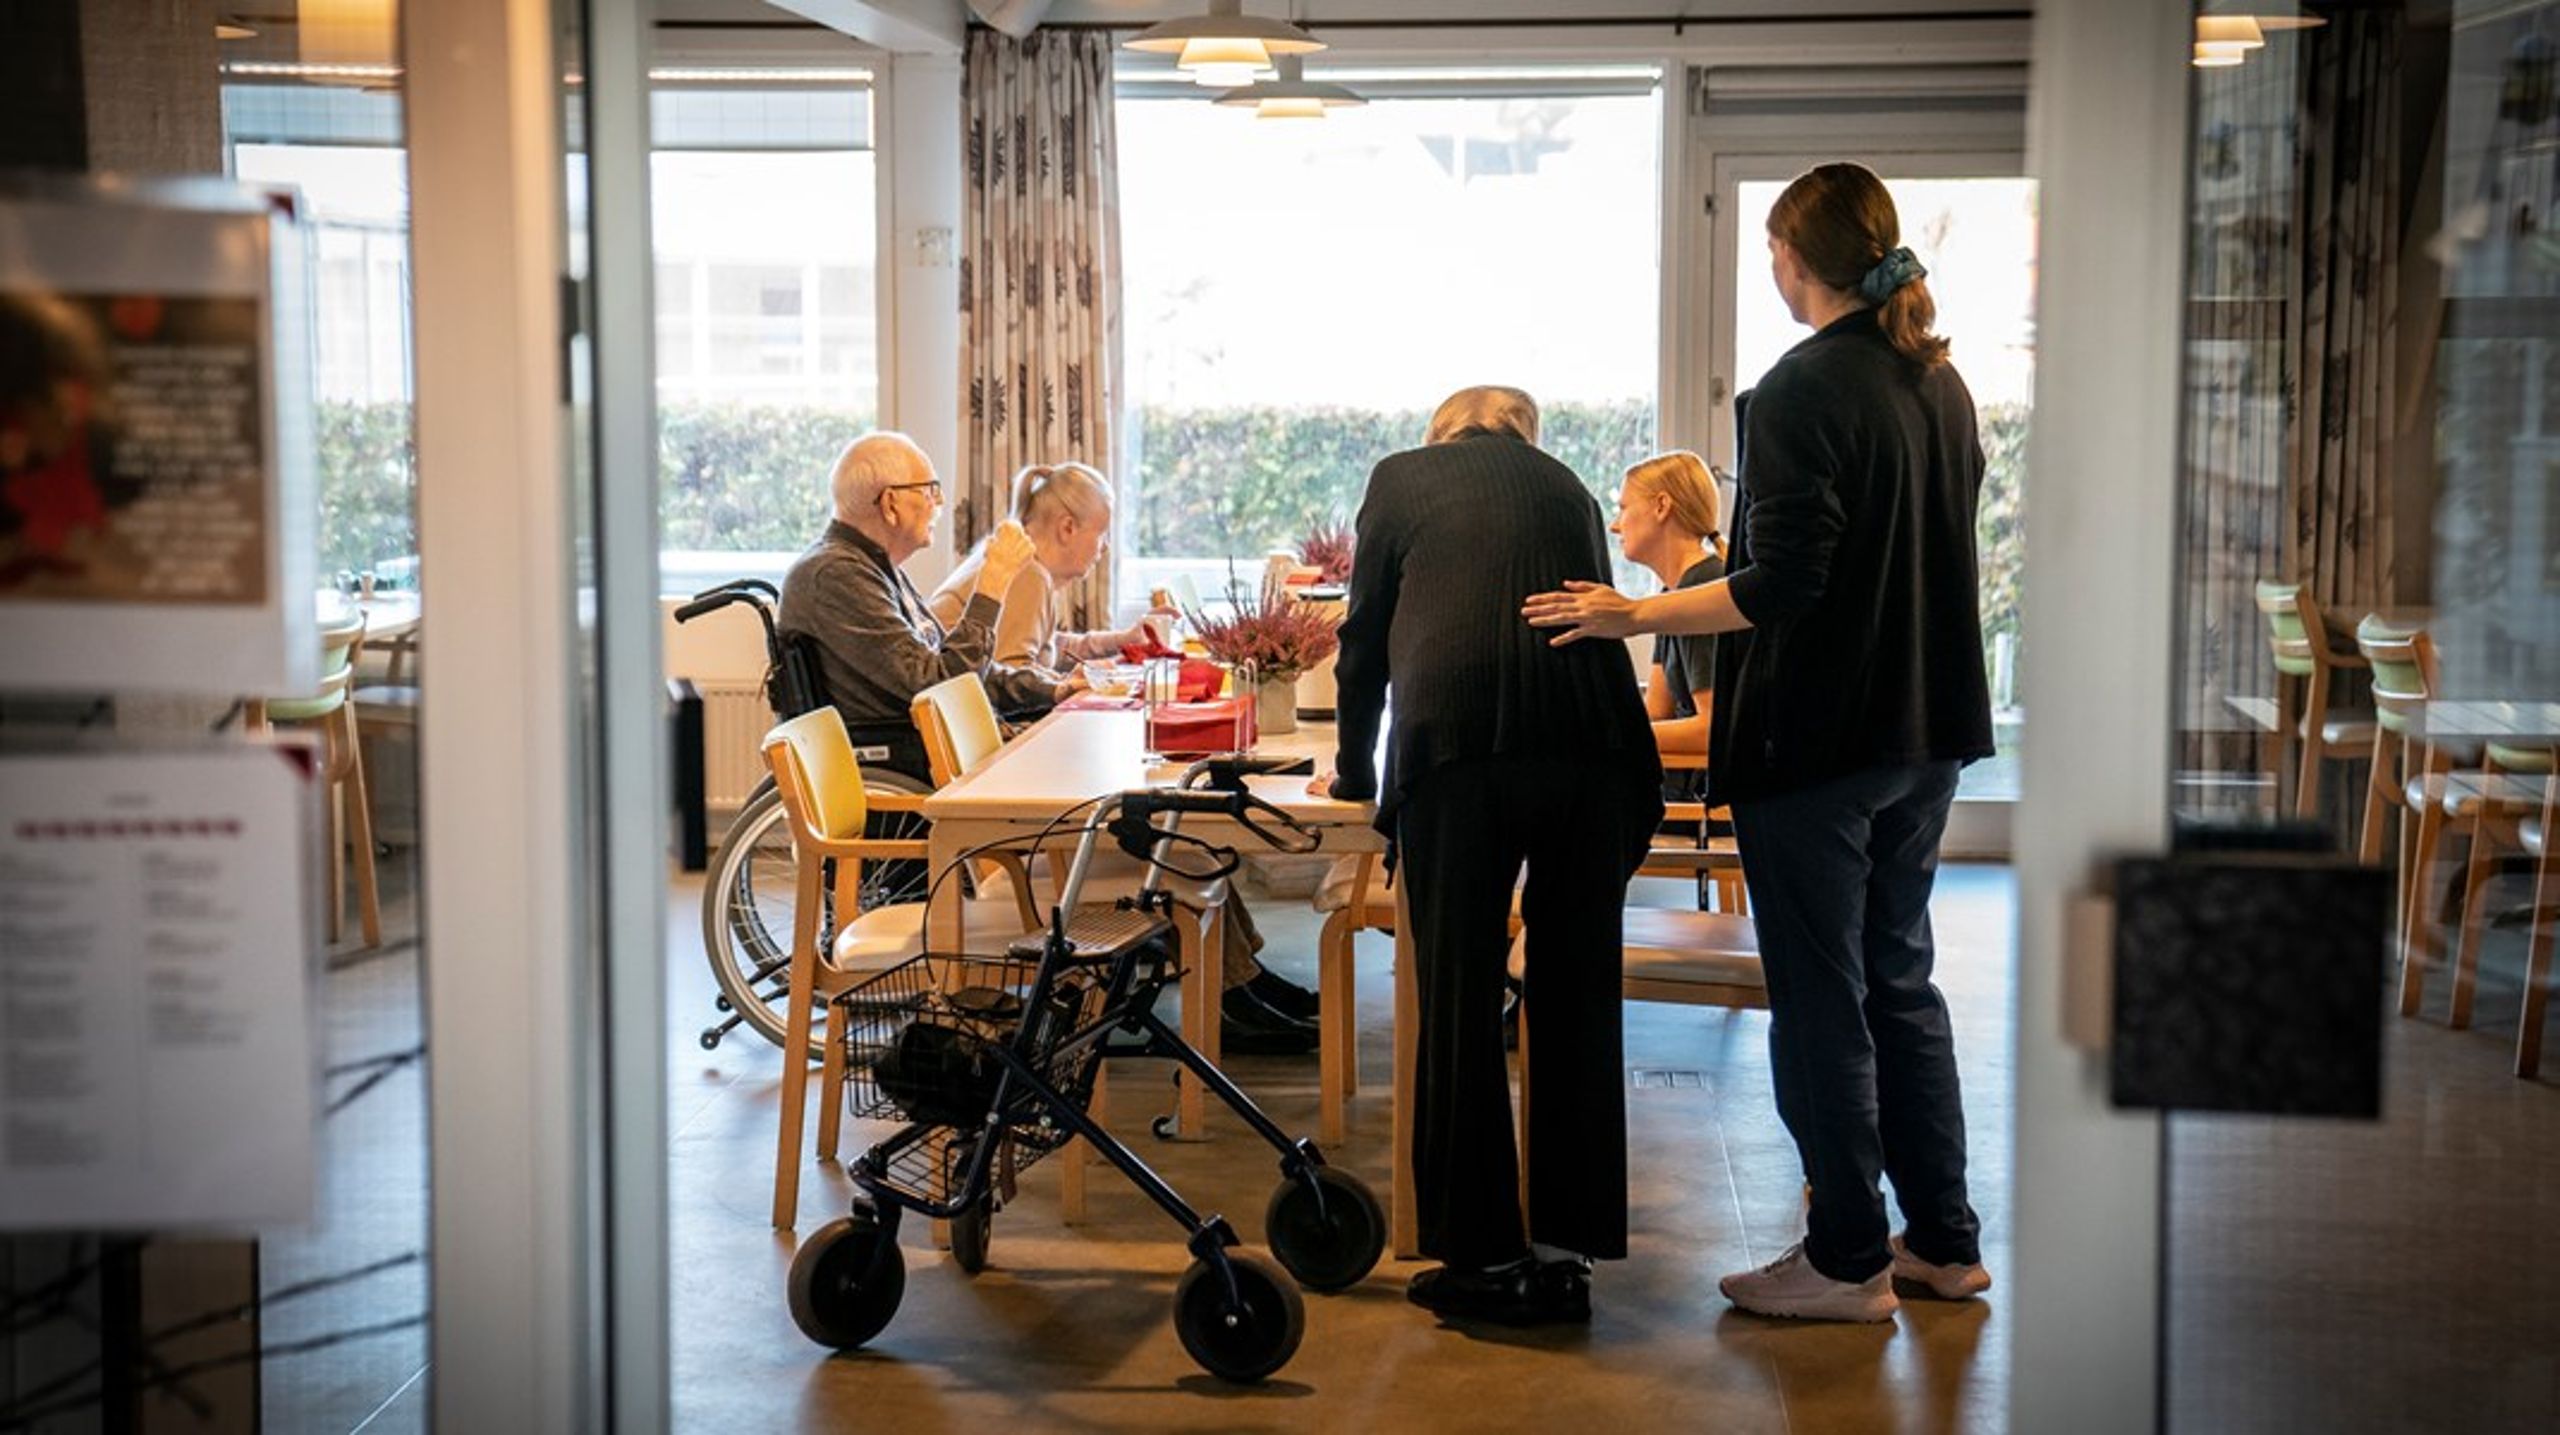 Kommunerne skriger på medarbejdere til ældresektoren, men skærer alligevel i personalet. Det hænger ikke&nbsp;sammen, at Danmark skærer i velfærden, selvom økonomien er bomstærk, skriver Elisa Rimpler, Gordon Ørskov Madsen m.fl.